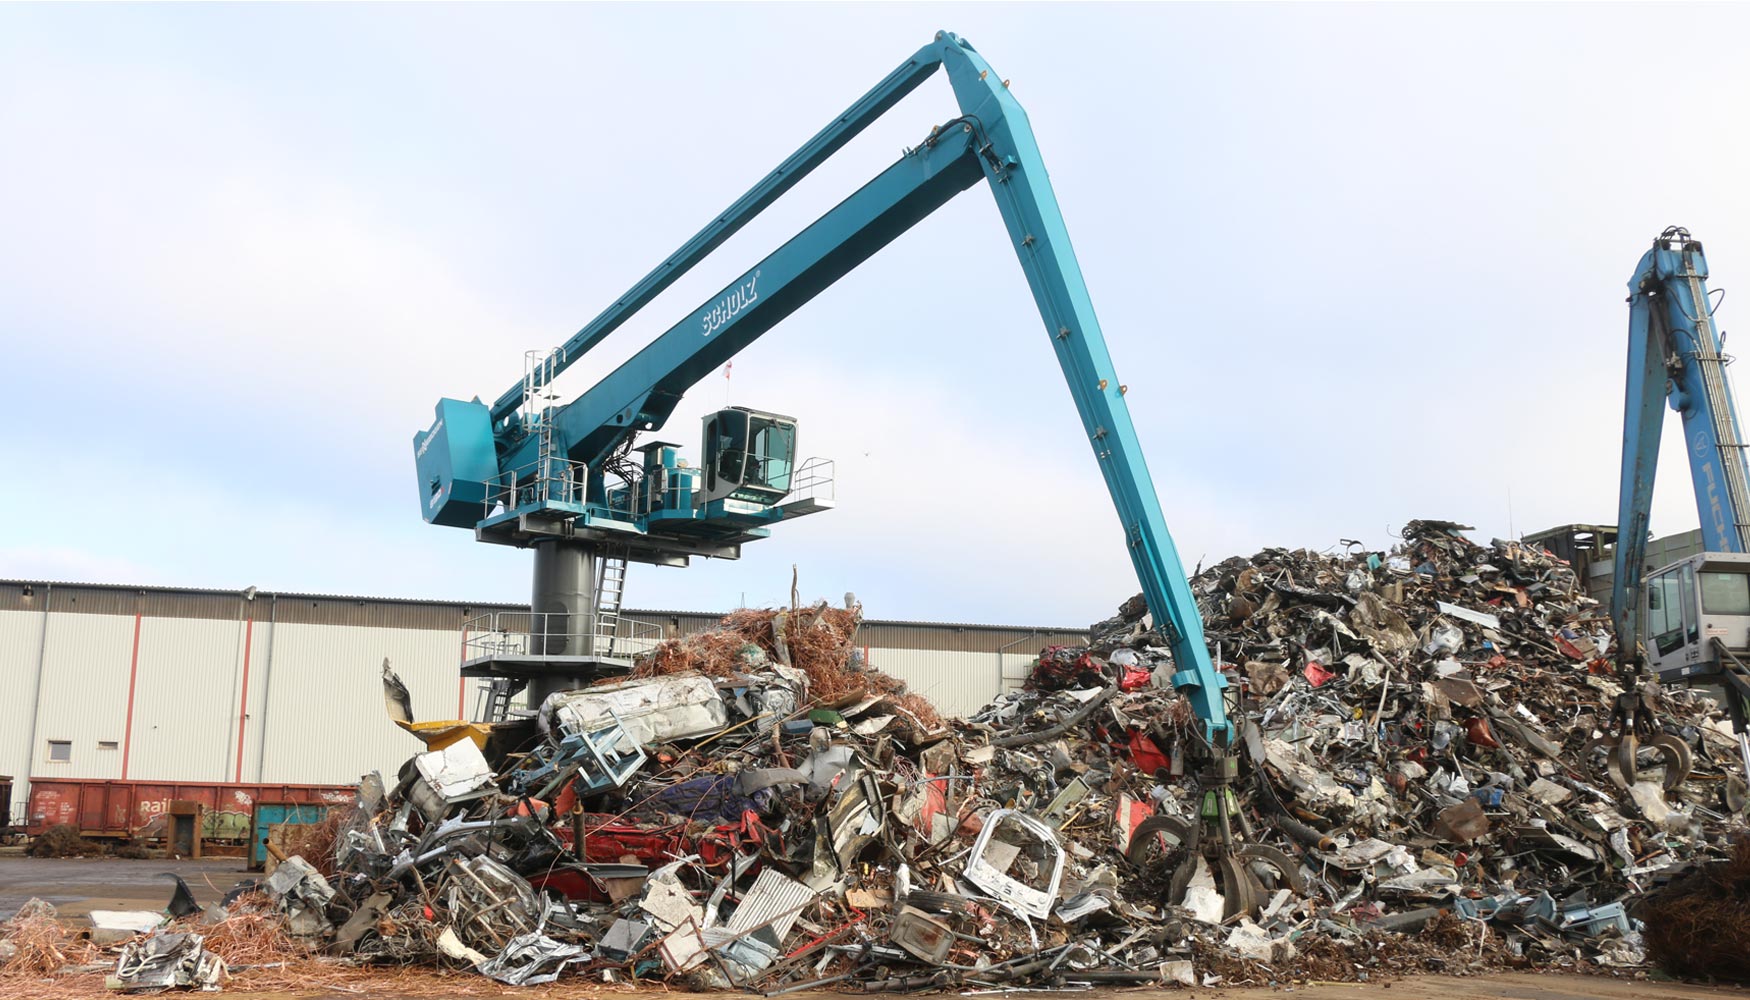 Posicionada centralmente, la Sennebogen 8130 EQ carga la trituradora de 3.000 CV en la sede de la empresa Scholz Recycling en Espenhain...